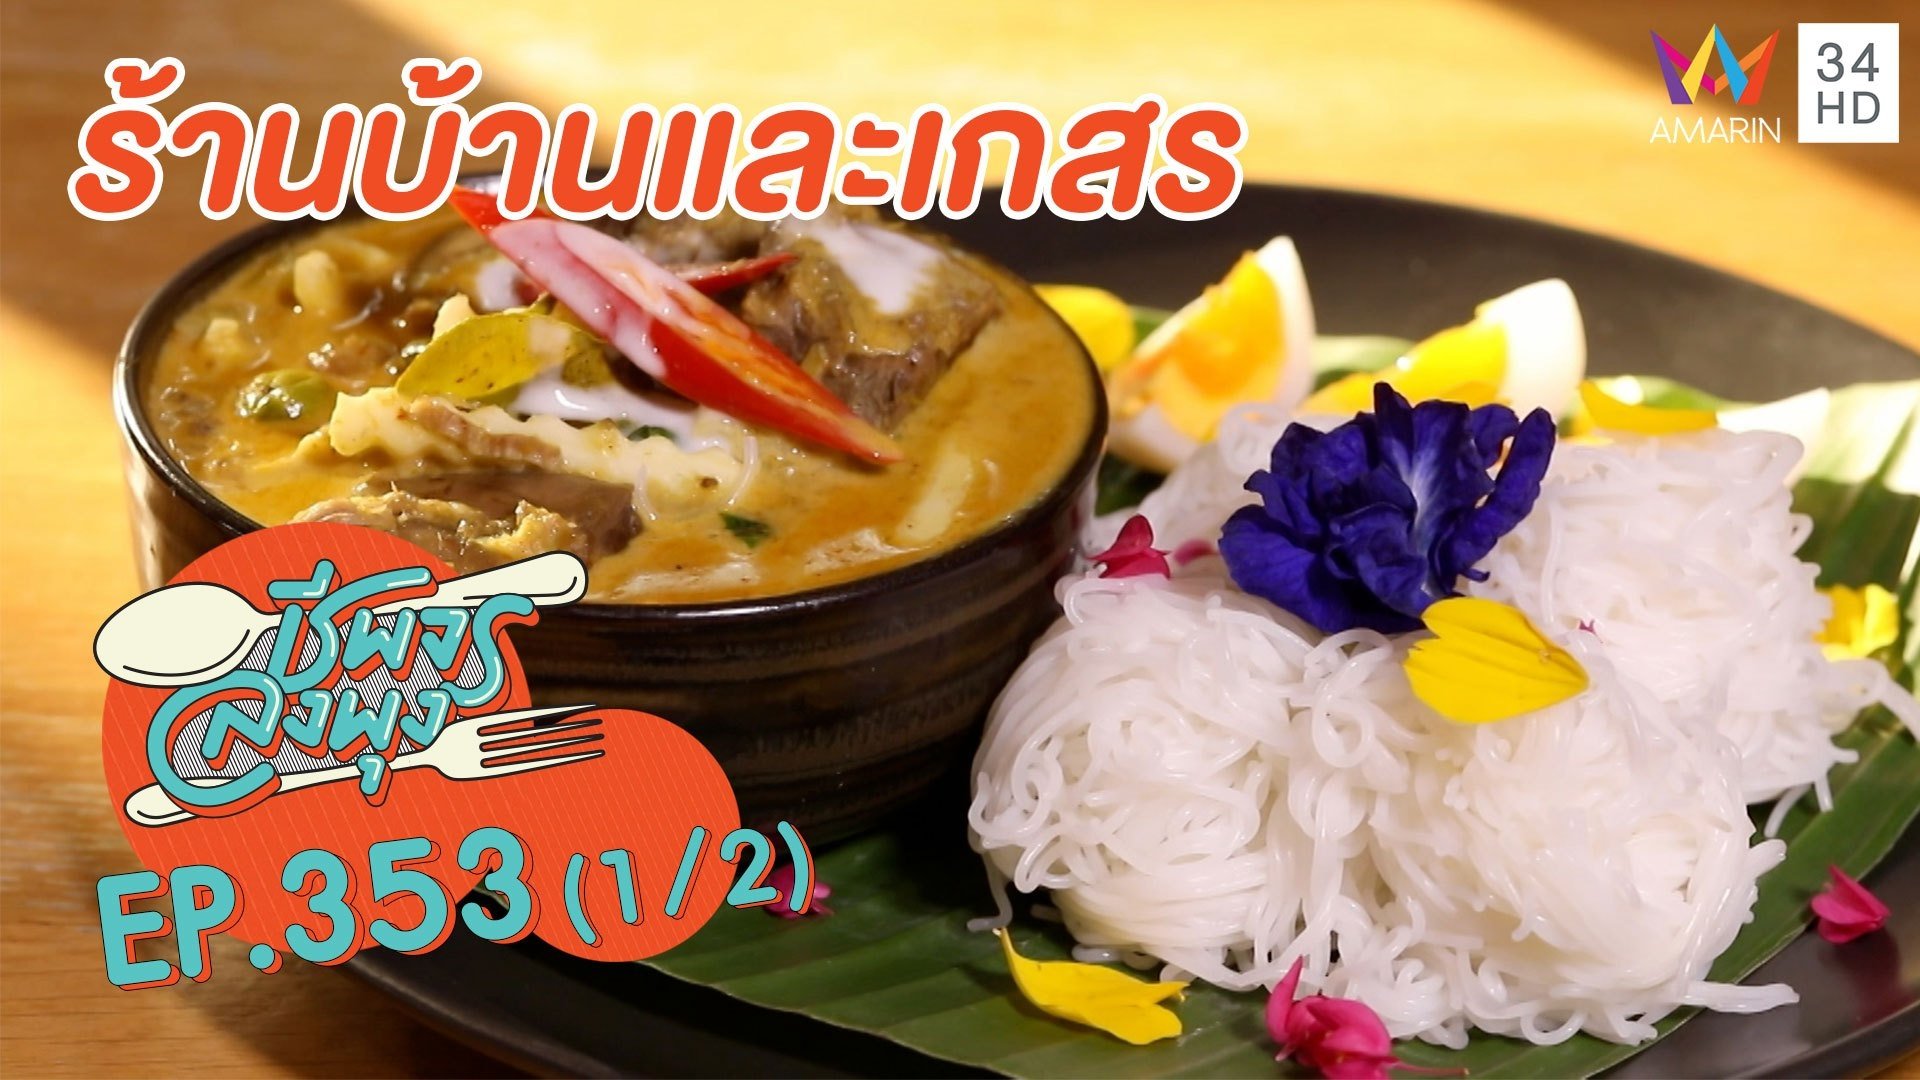 ลิ้มรสอาหารไทยแท้รสดั้งเดิม @ร้านบ้านและเกสร | ชีพจรลงพุง | 25 ธ.ค. 64 (1/2) | AMARIN TVHD34